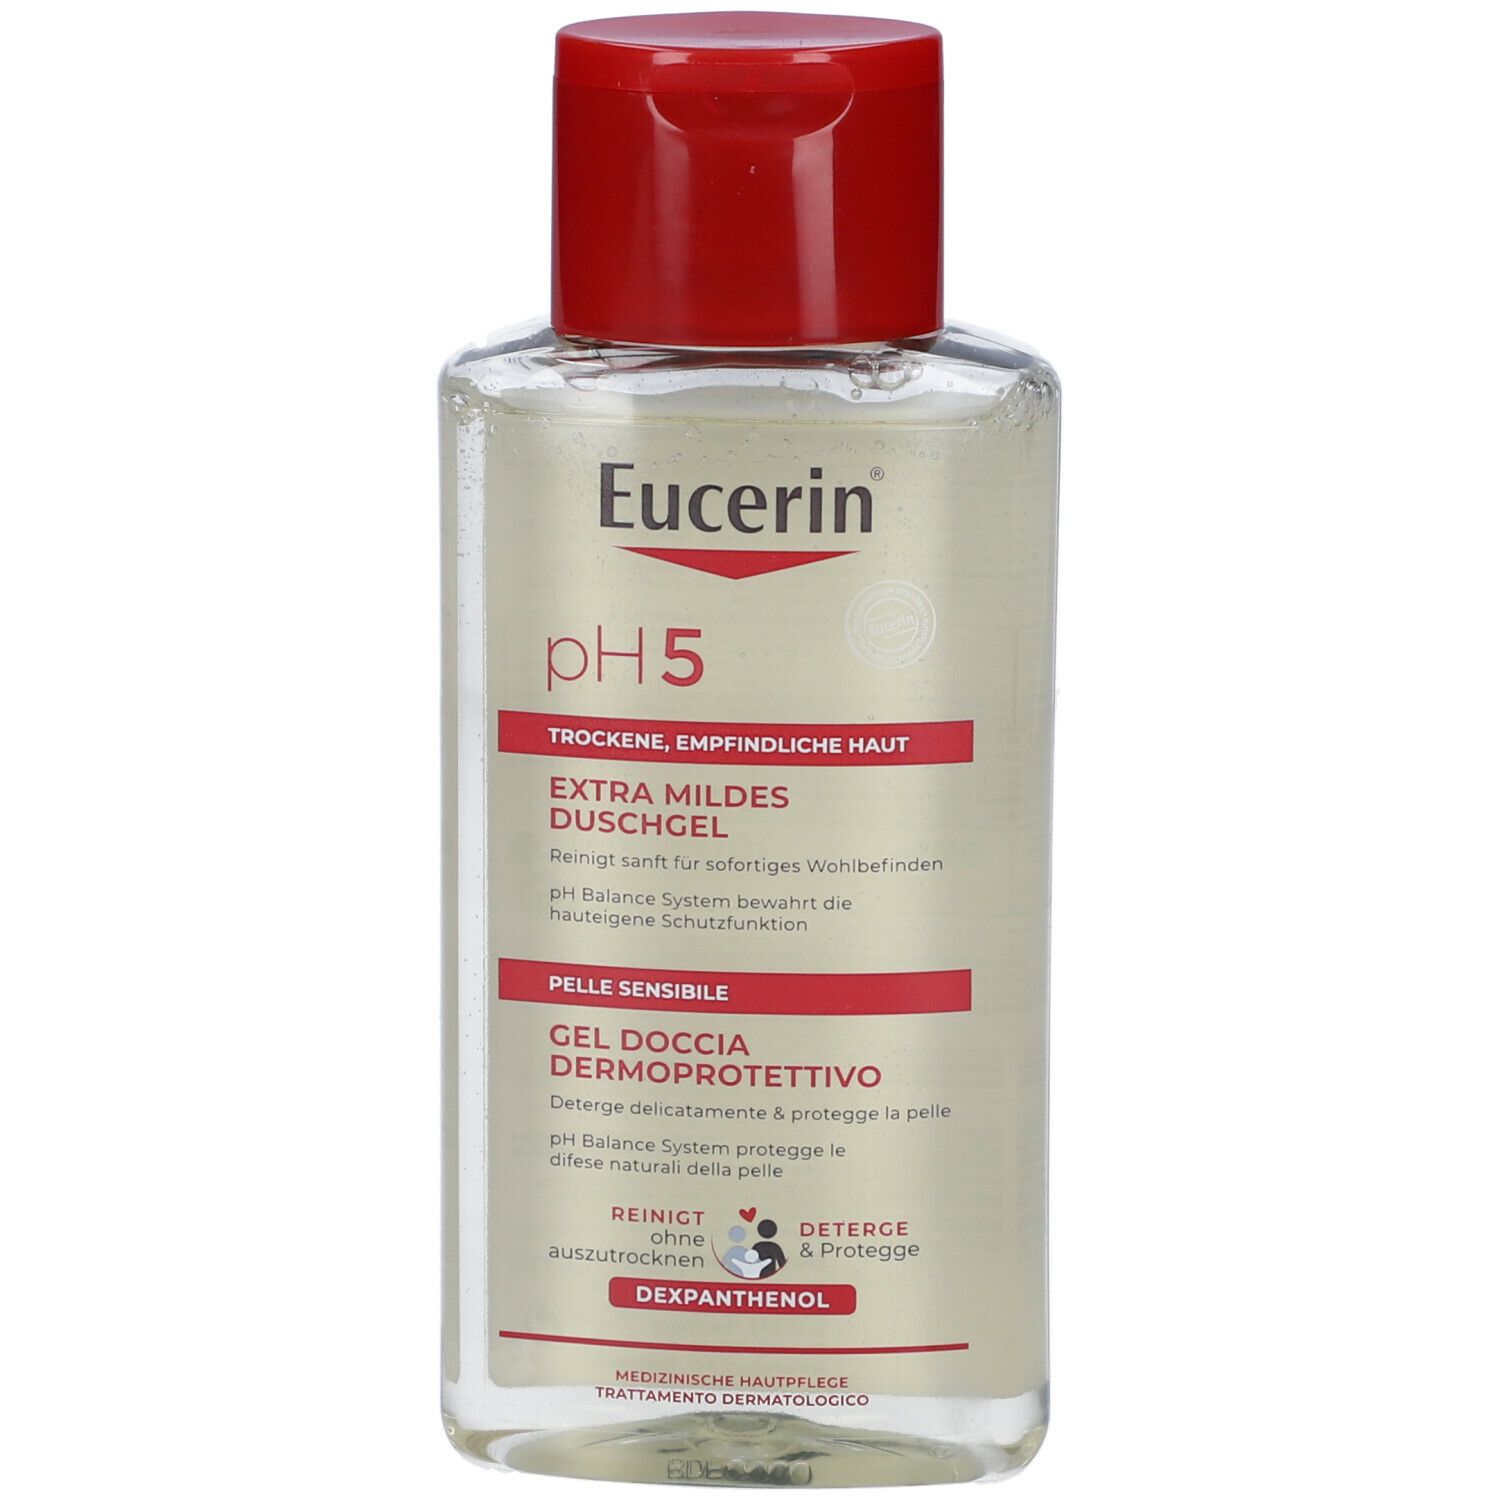 Eucerin Ph 5 Gel Doccia Dermoprotettivo